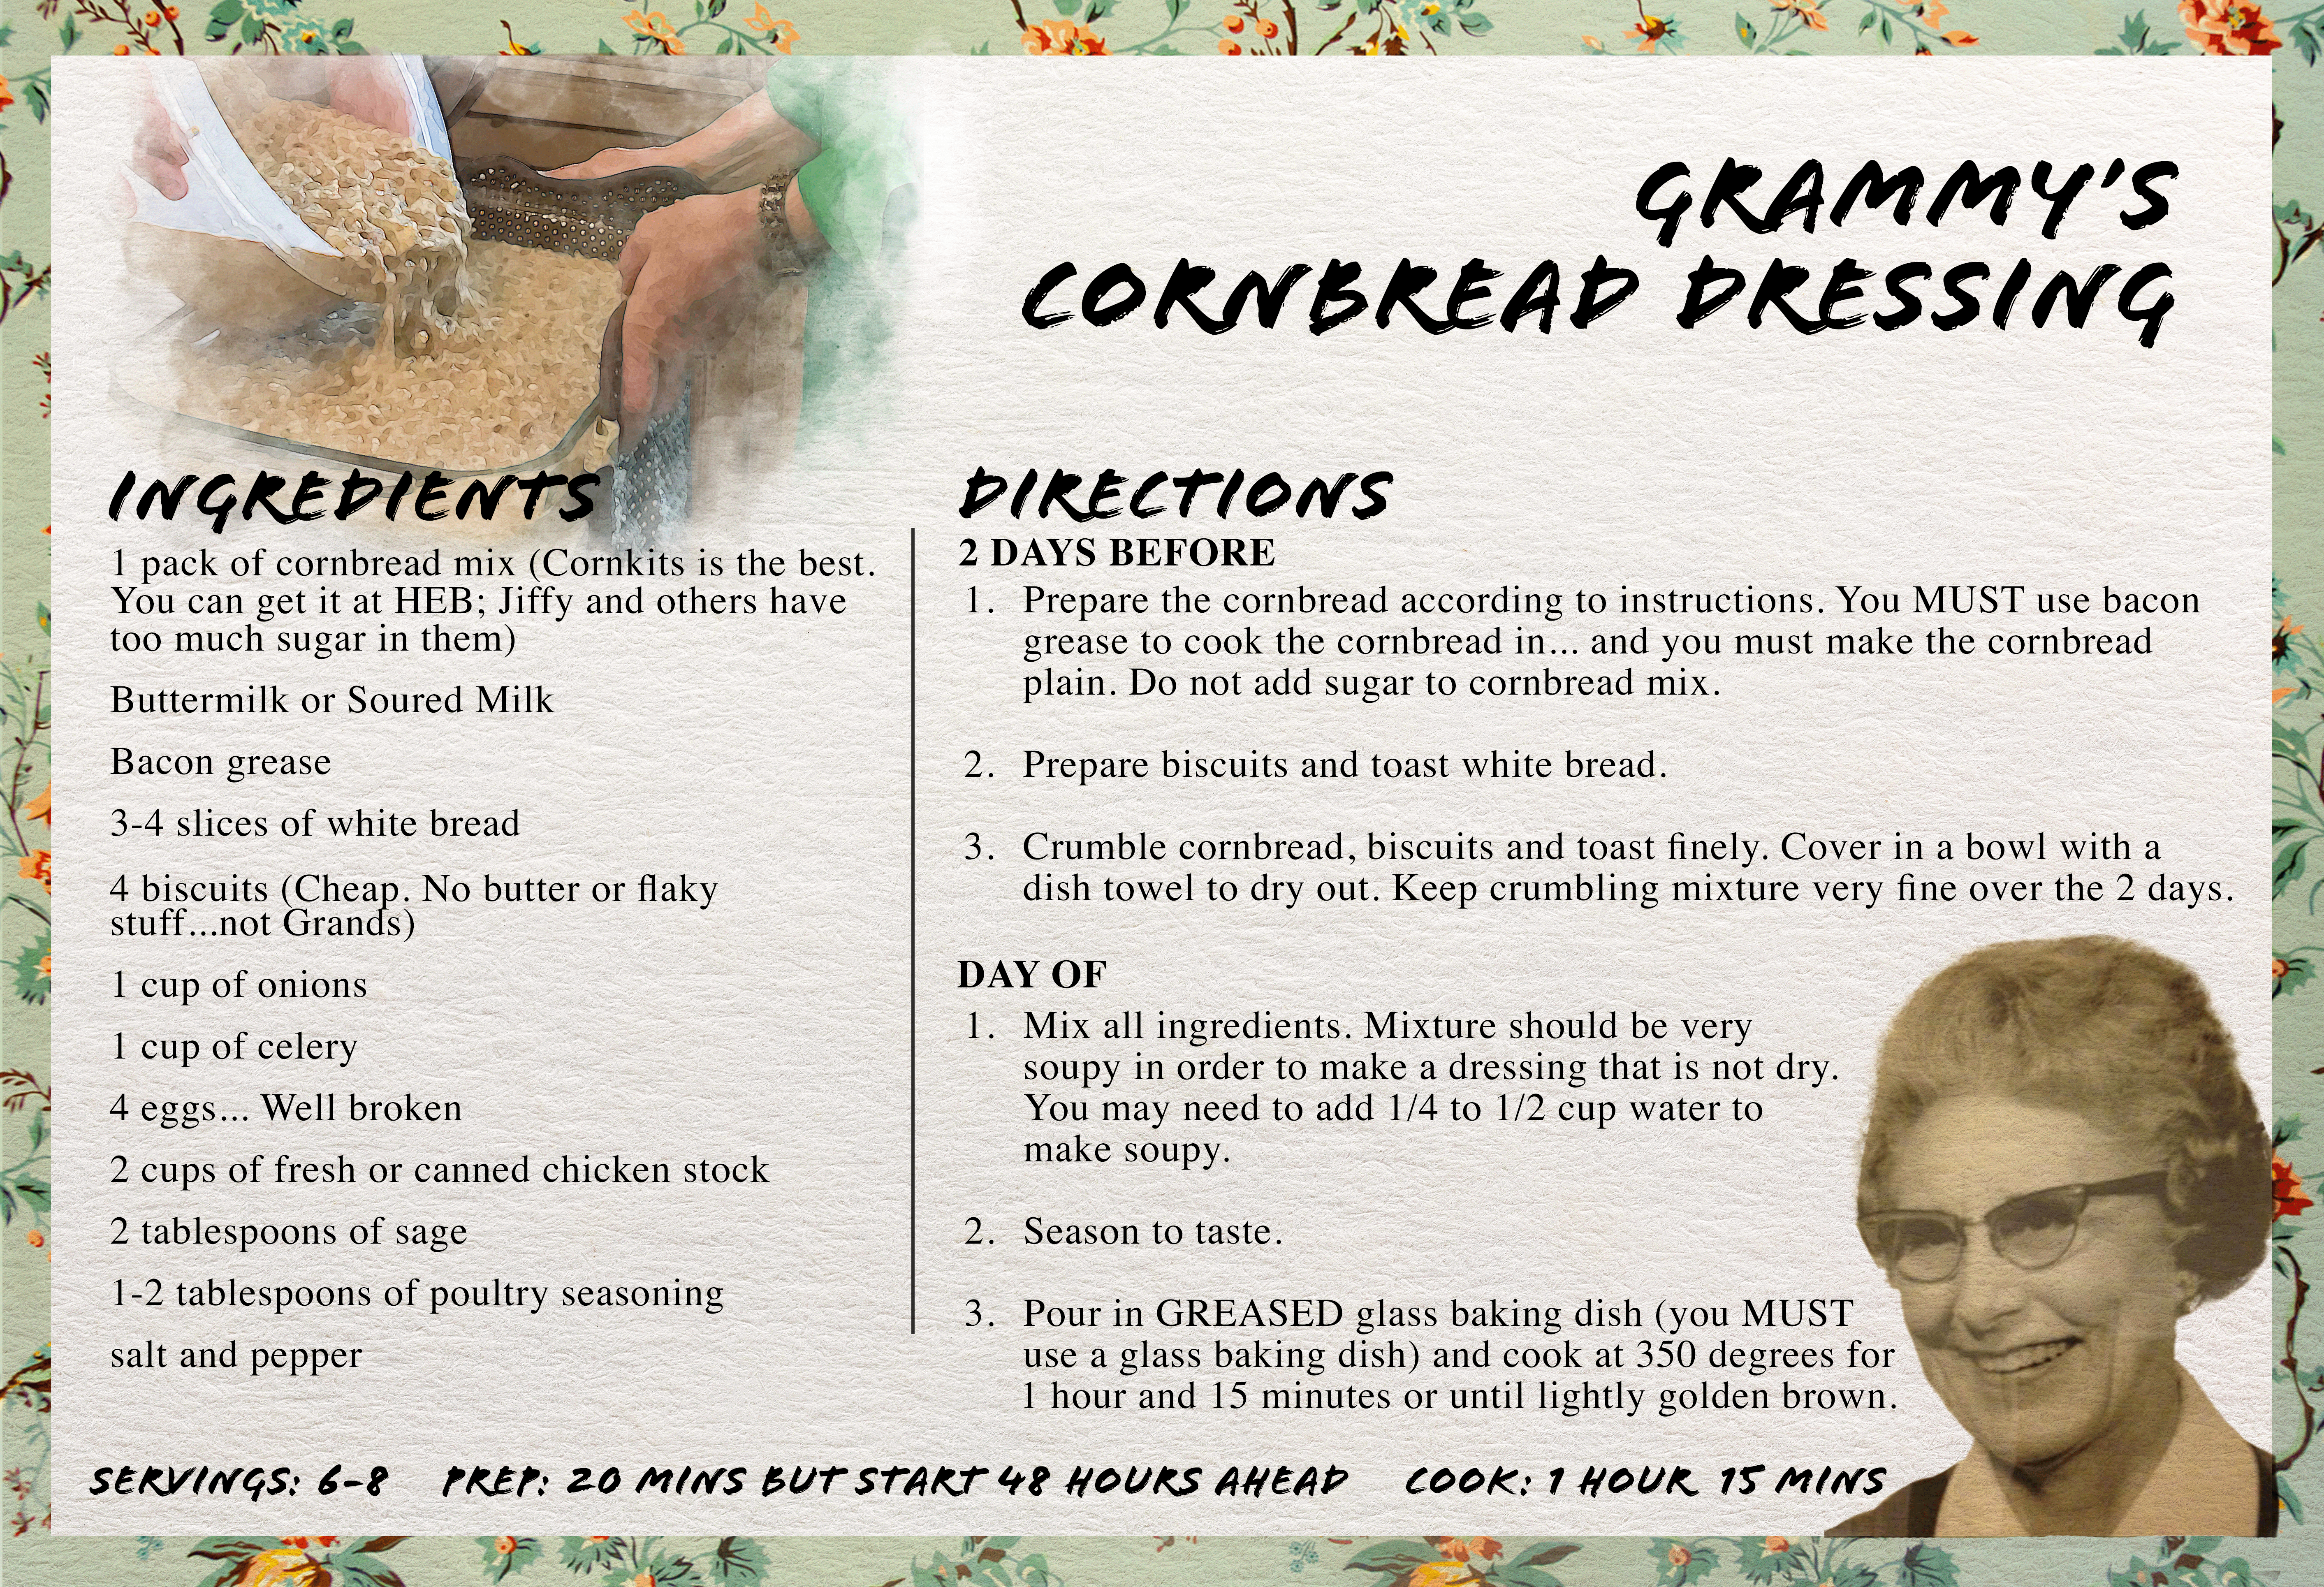 cornbread dressing recipe card